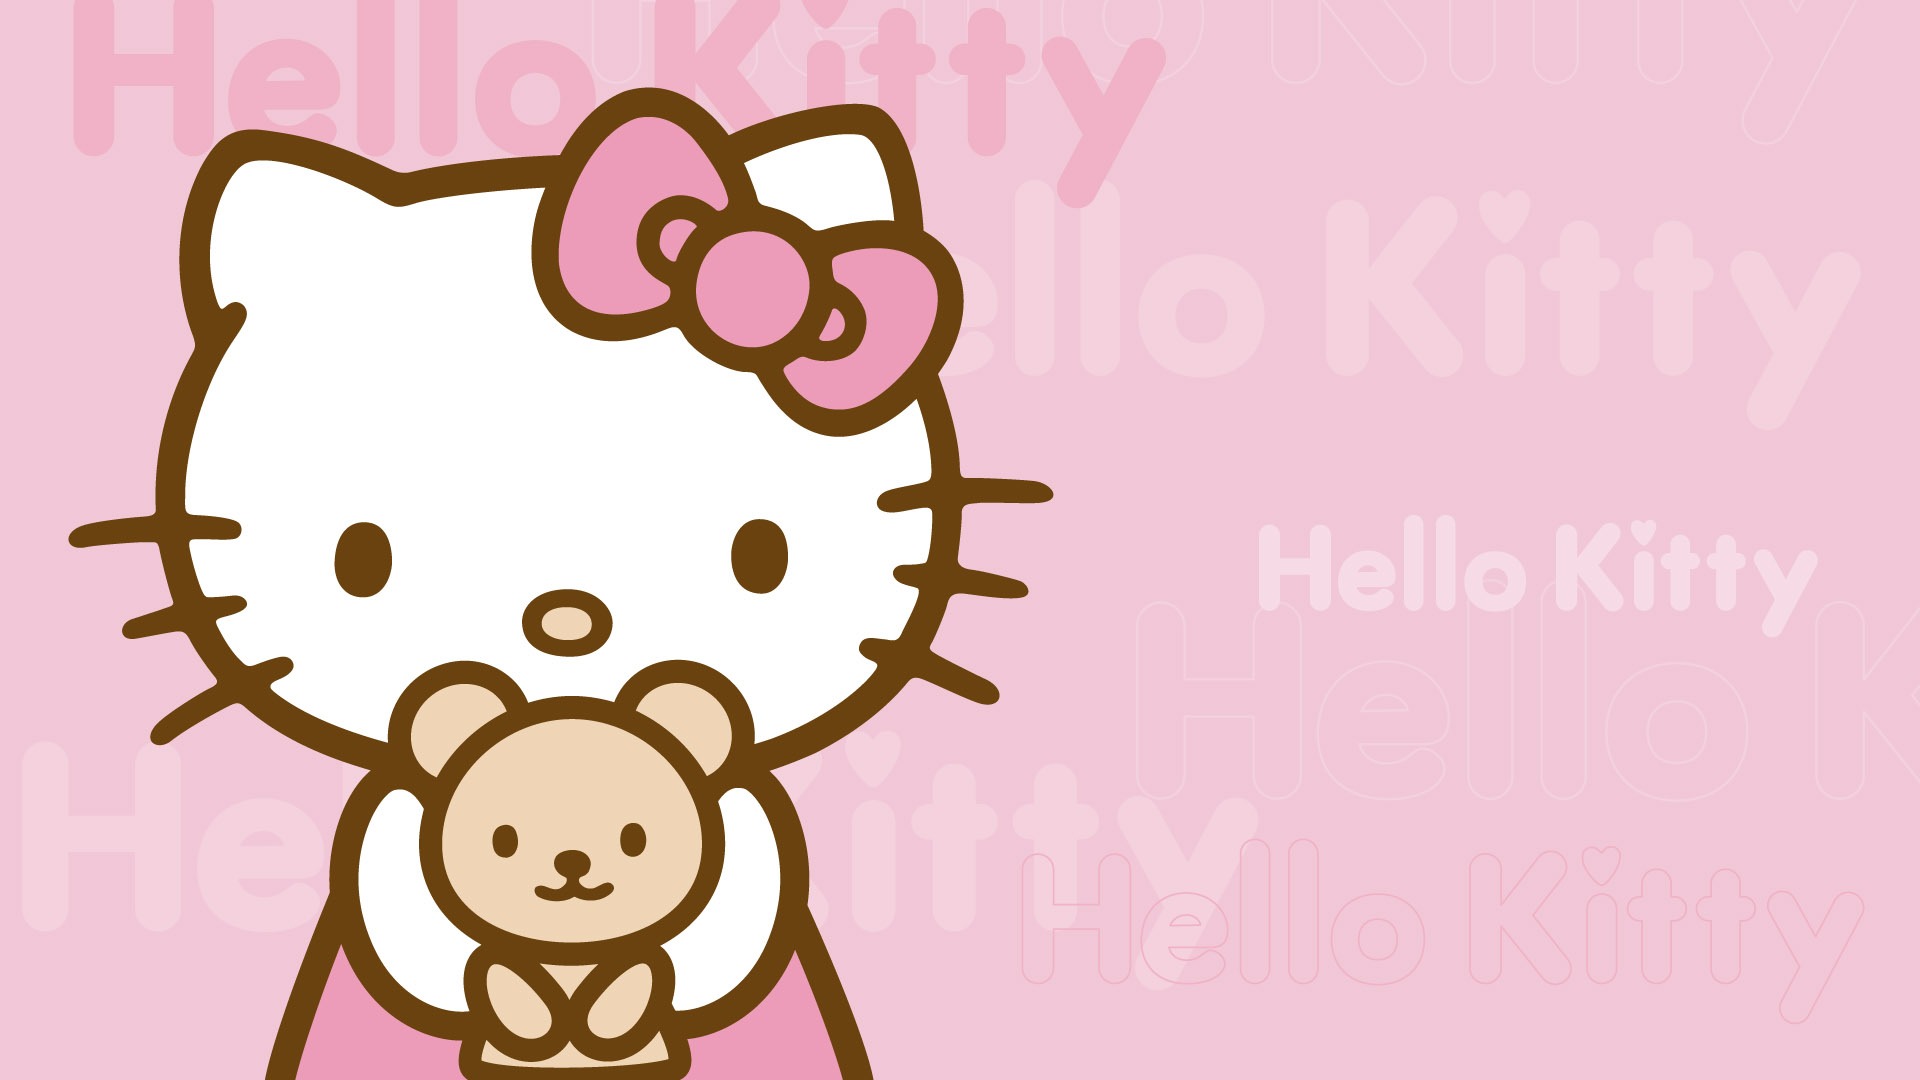 19x1080 ハローキティが可愛い壁紙 フルhd Hello Kitty Naver まとめ